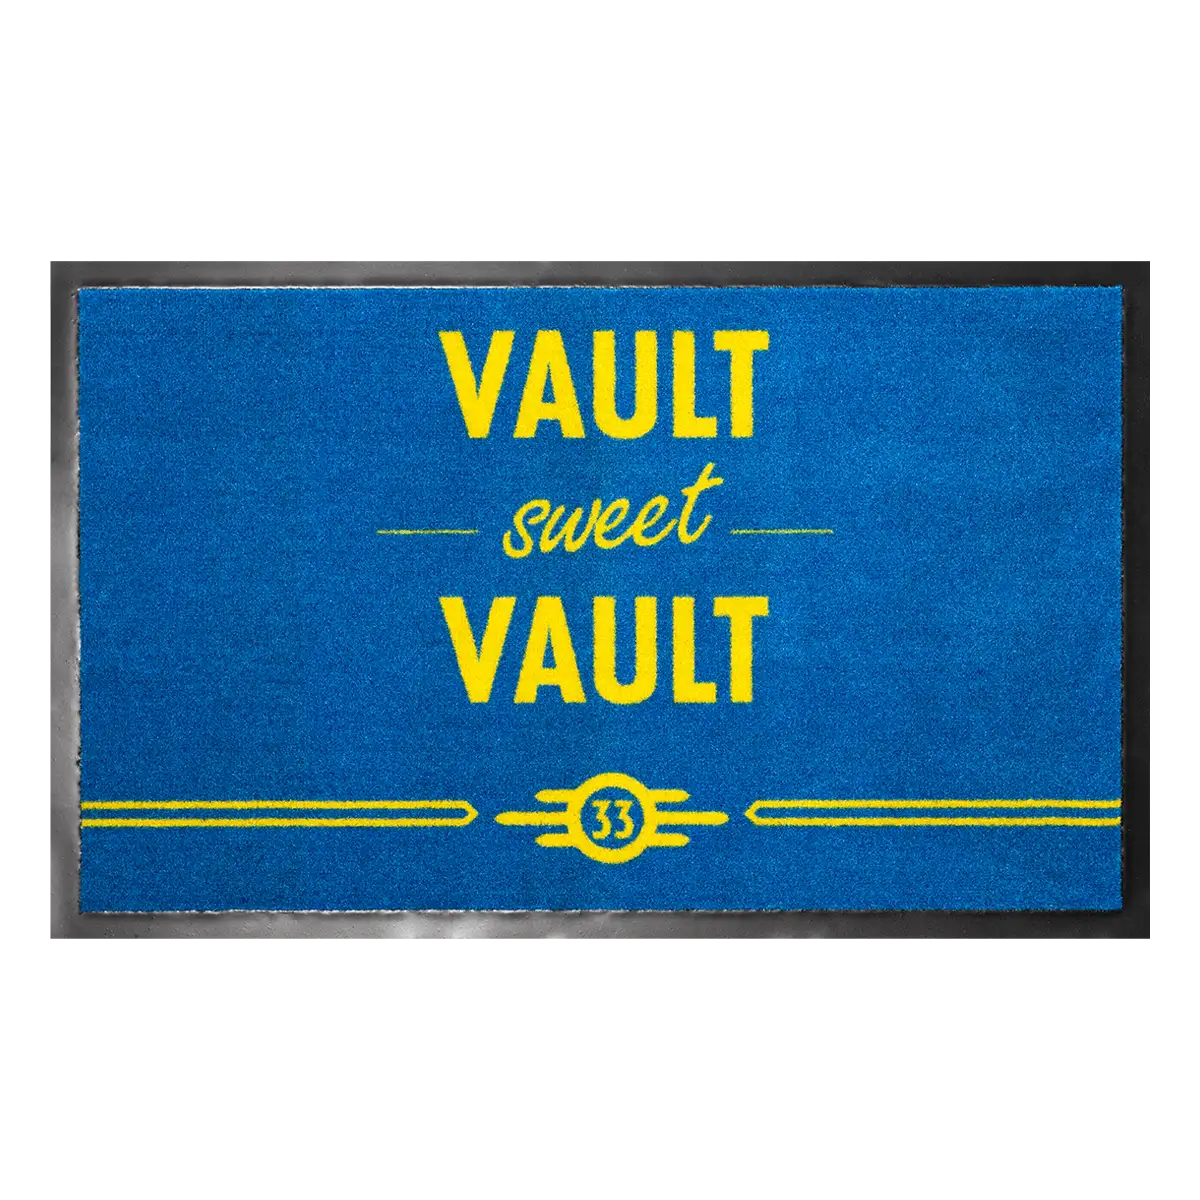 Fallout Doormat "Vault Sweet Vault"